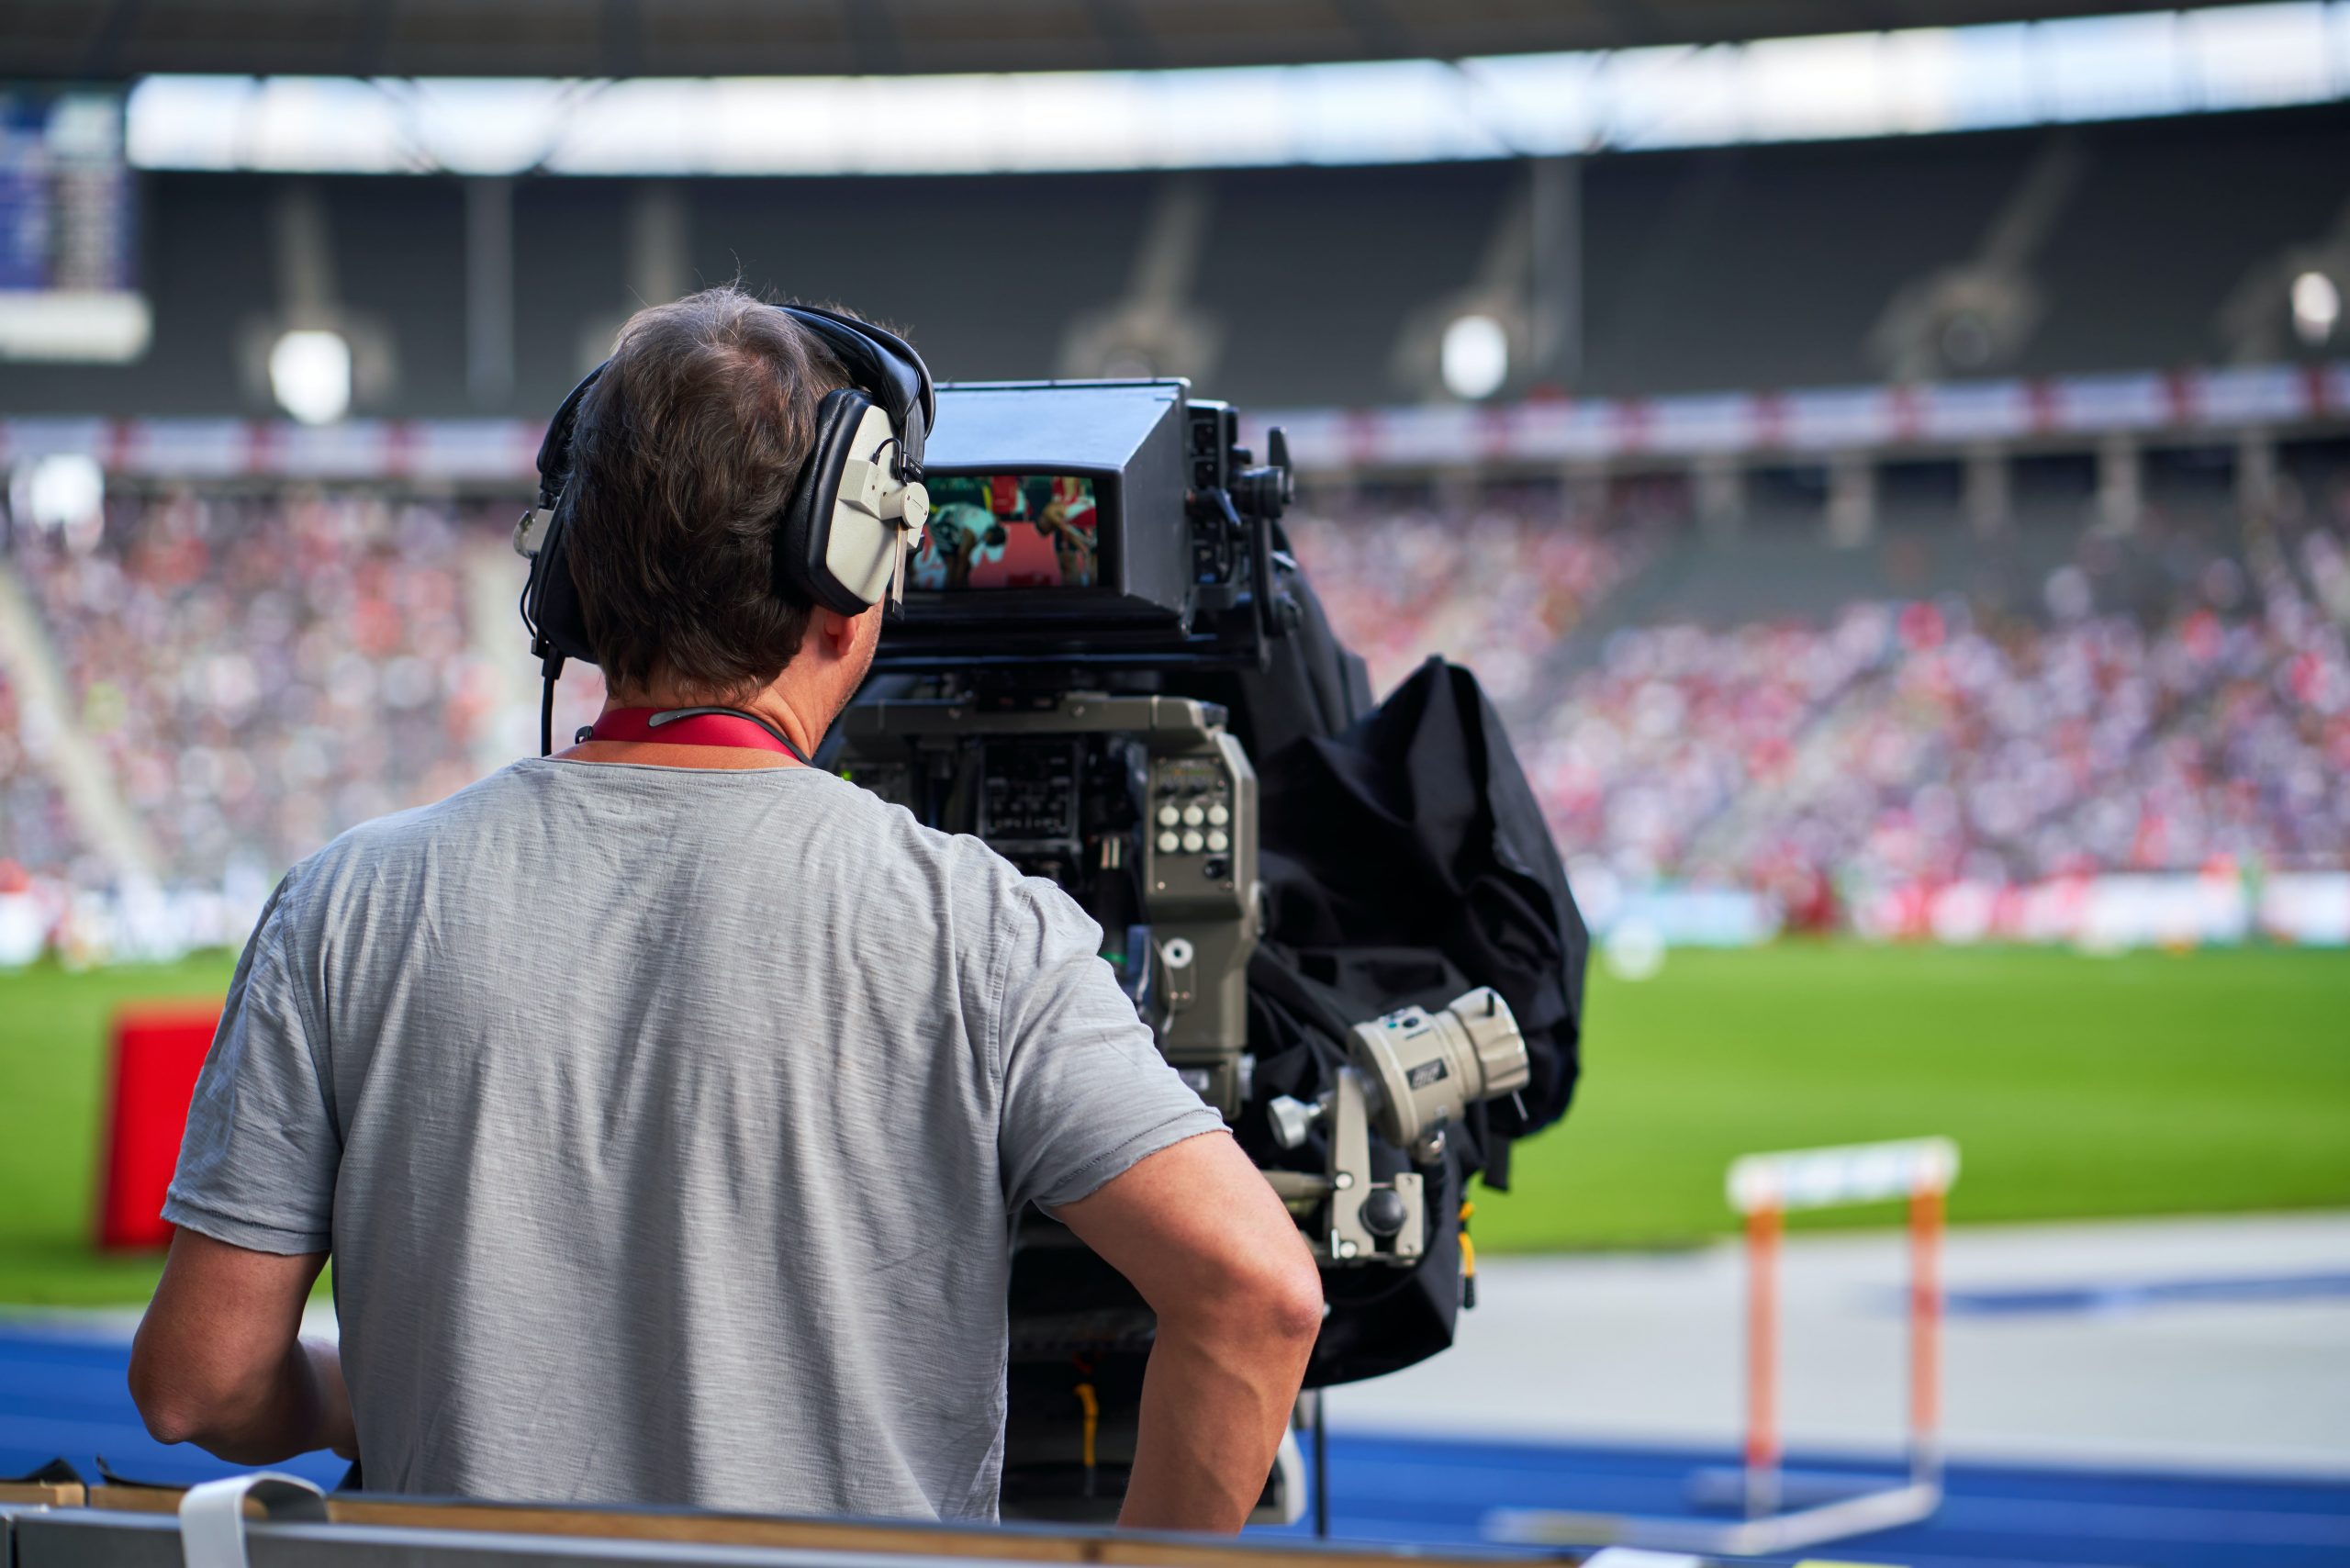 Ein Mann bedient eine TV-Kamera am Spielfeldrand eines Fußballspiels. Man sieht den Mann von hinten und guckt mit Blickrichtung der Kamera